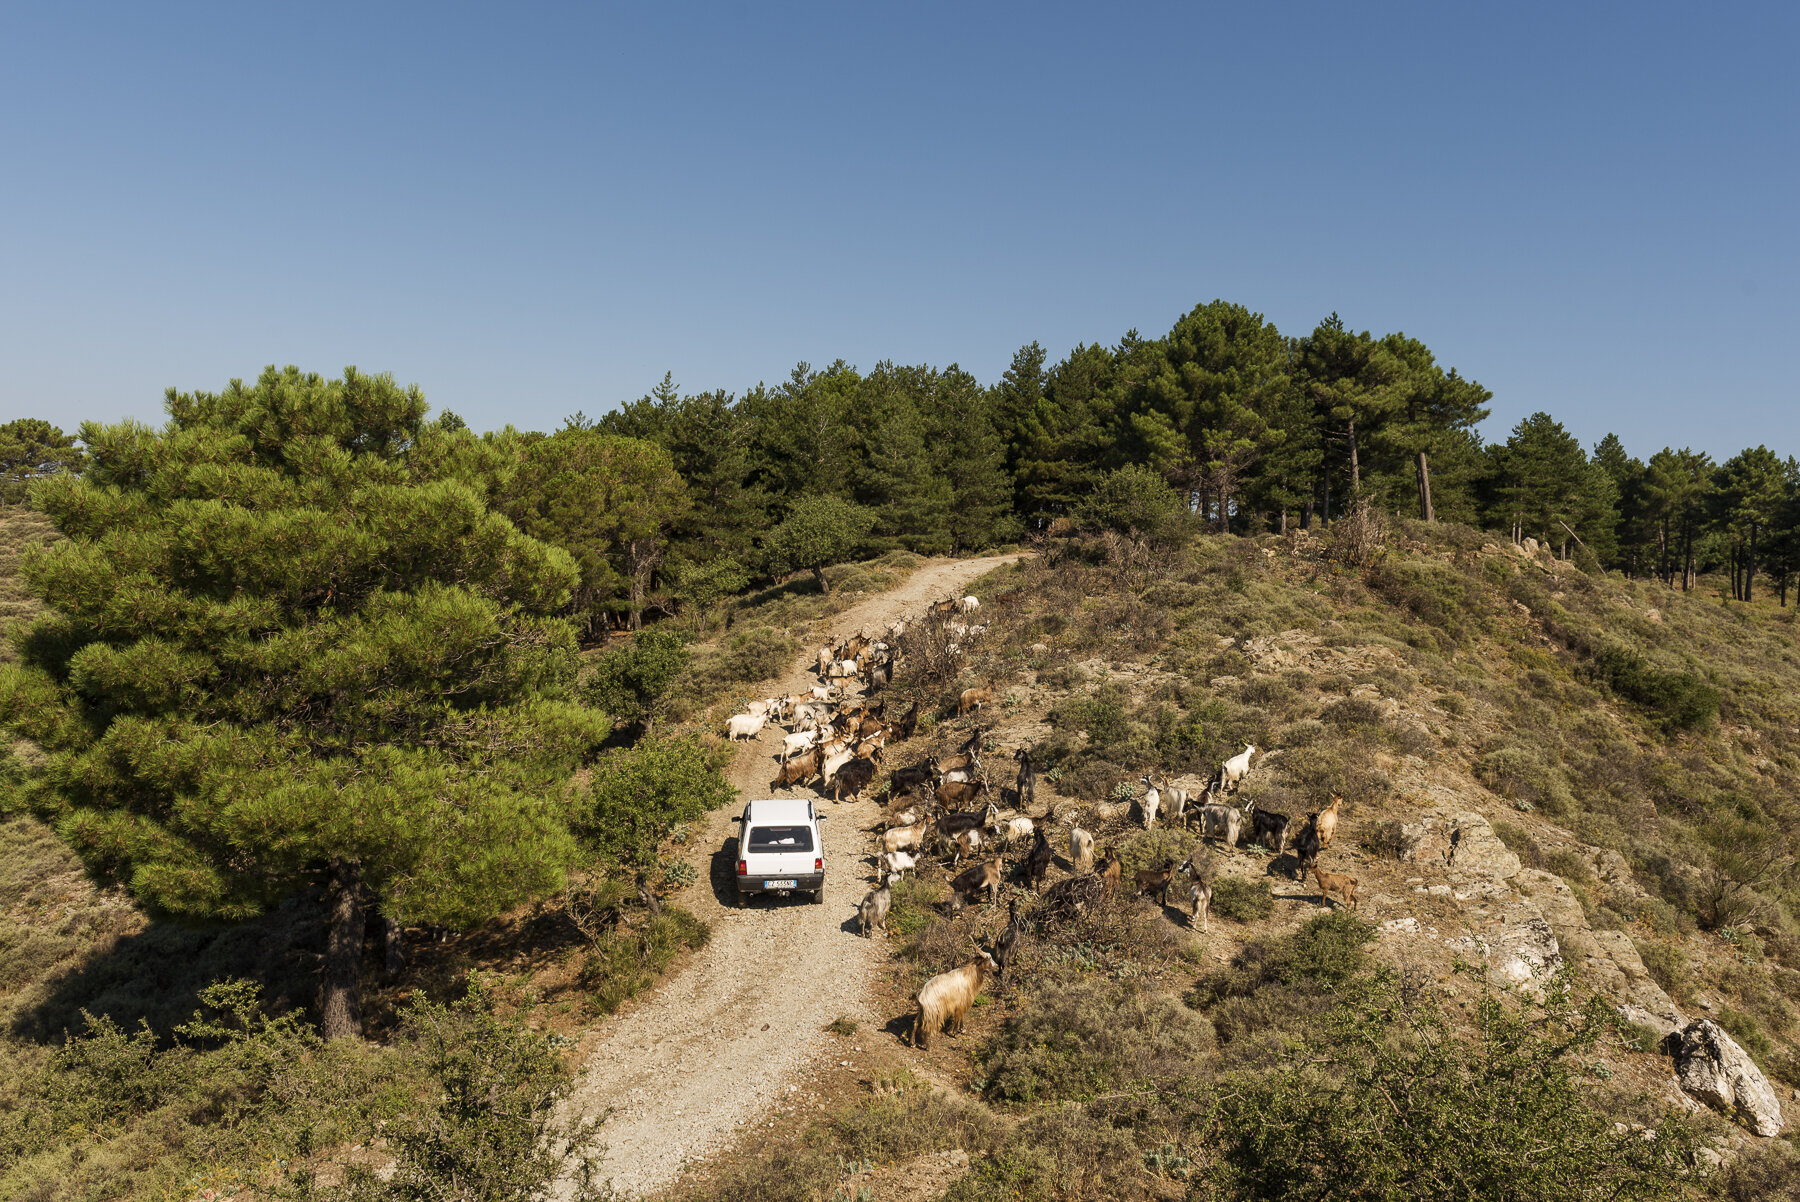  Nino Nucera (41), pastore-sentinella di Bova, pascola il suo gregge guidando una vecchia Fiat Panda 4x4, nel Parco Nazionale dell’Aspromonte il 6 agosto, 2018.Nino è uno dei pastori coinvolti dalle autorità del parco nell’attività di avvistamento de